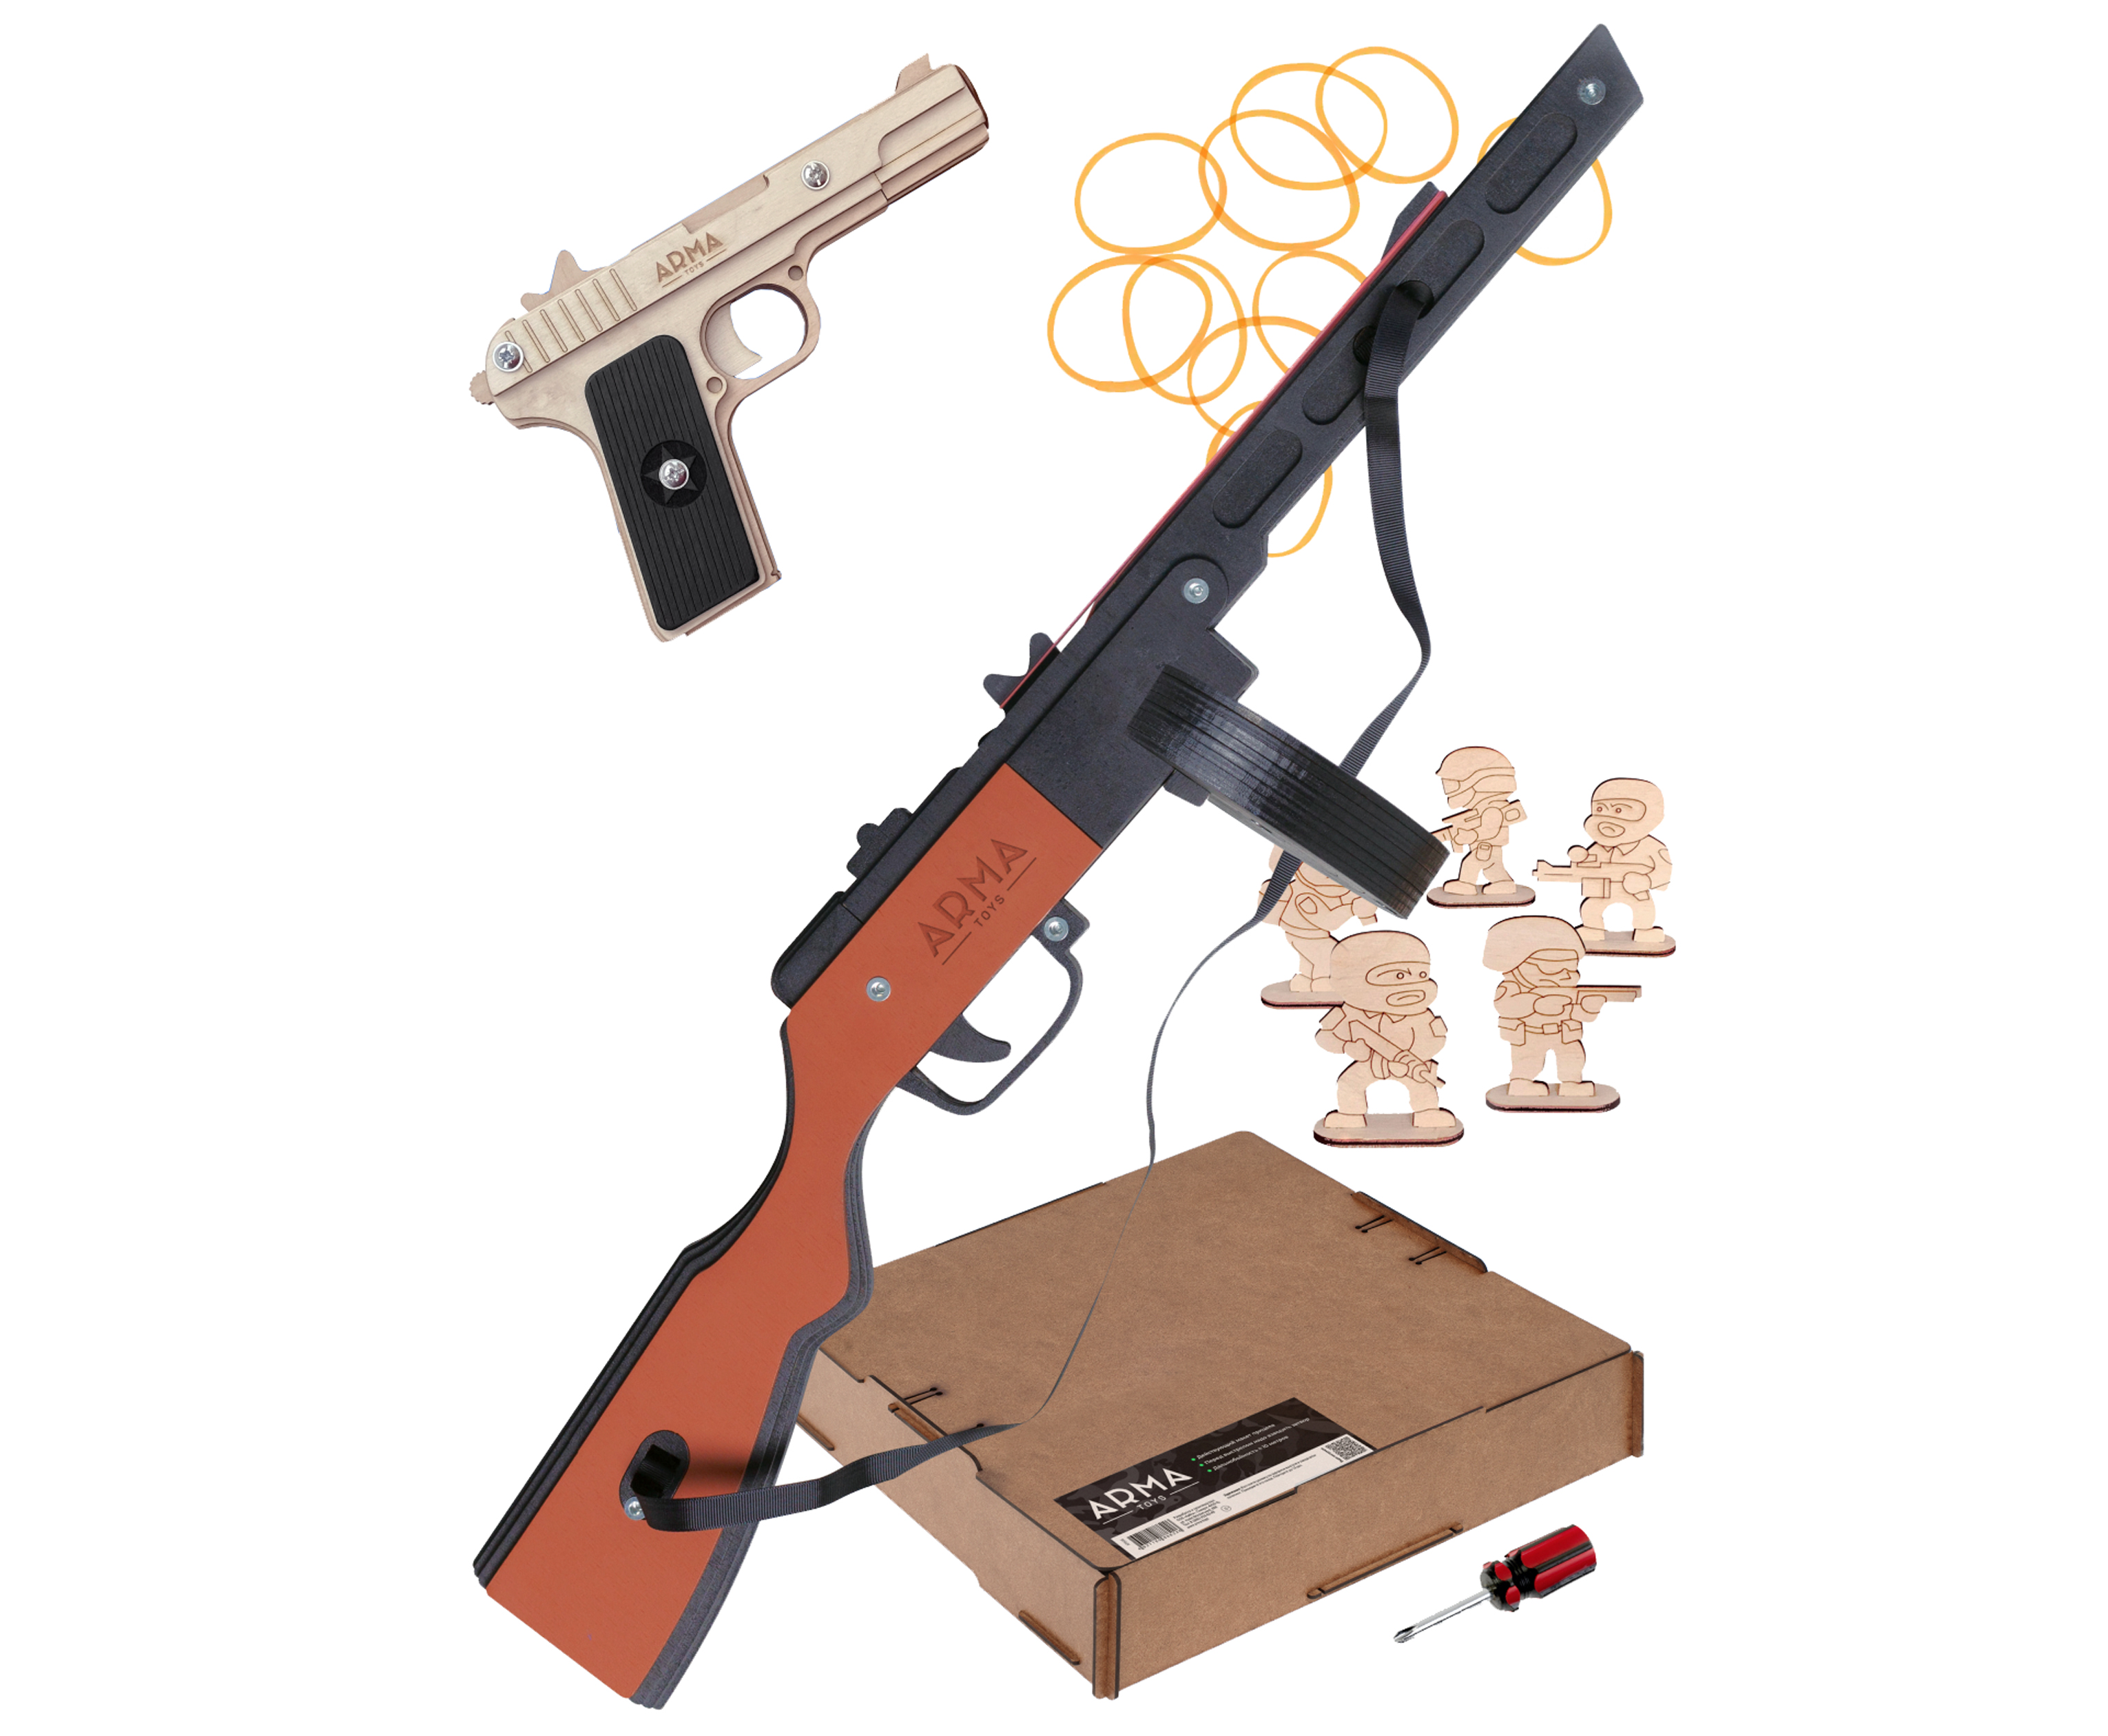 Набор игрушечных резинкострелов Arma toys Партизанский командир 2 набор резинкострелов arma toys спецназ фбр 2 винтовка m4 пистолет глок at510